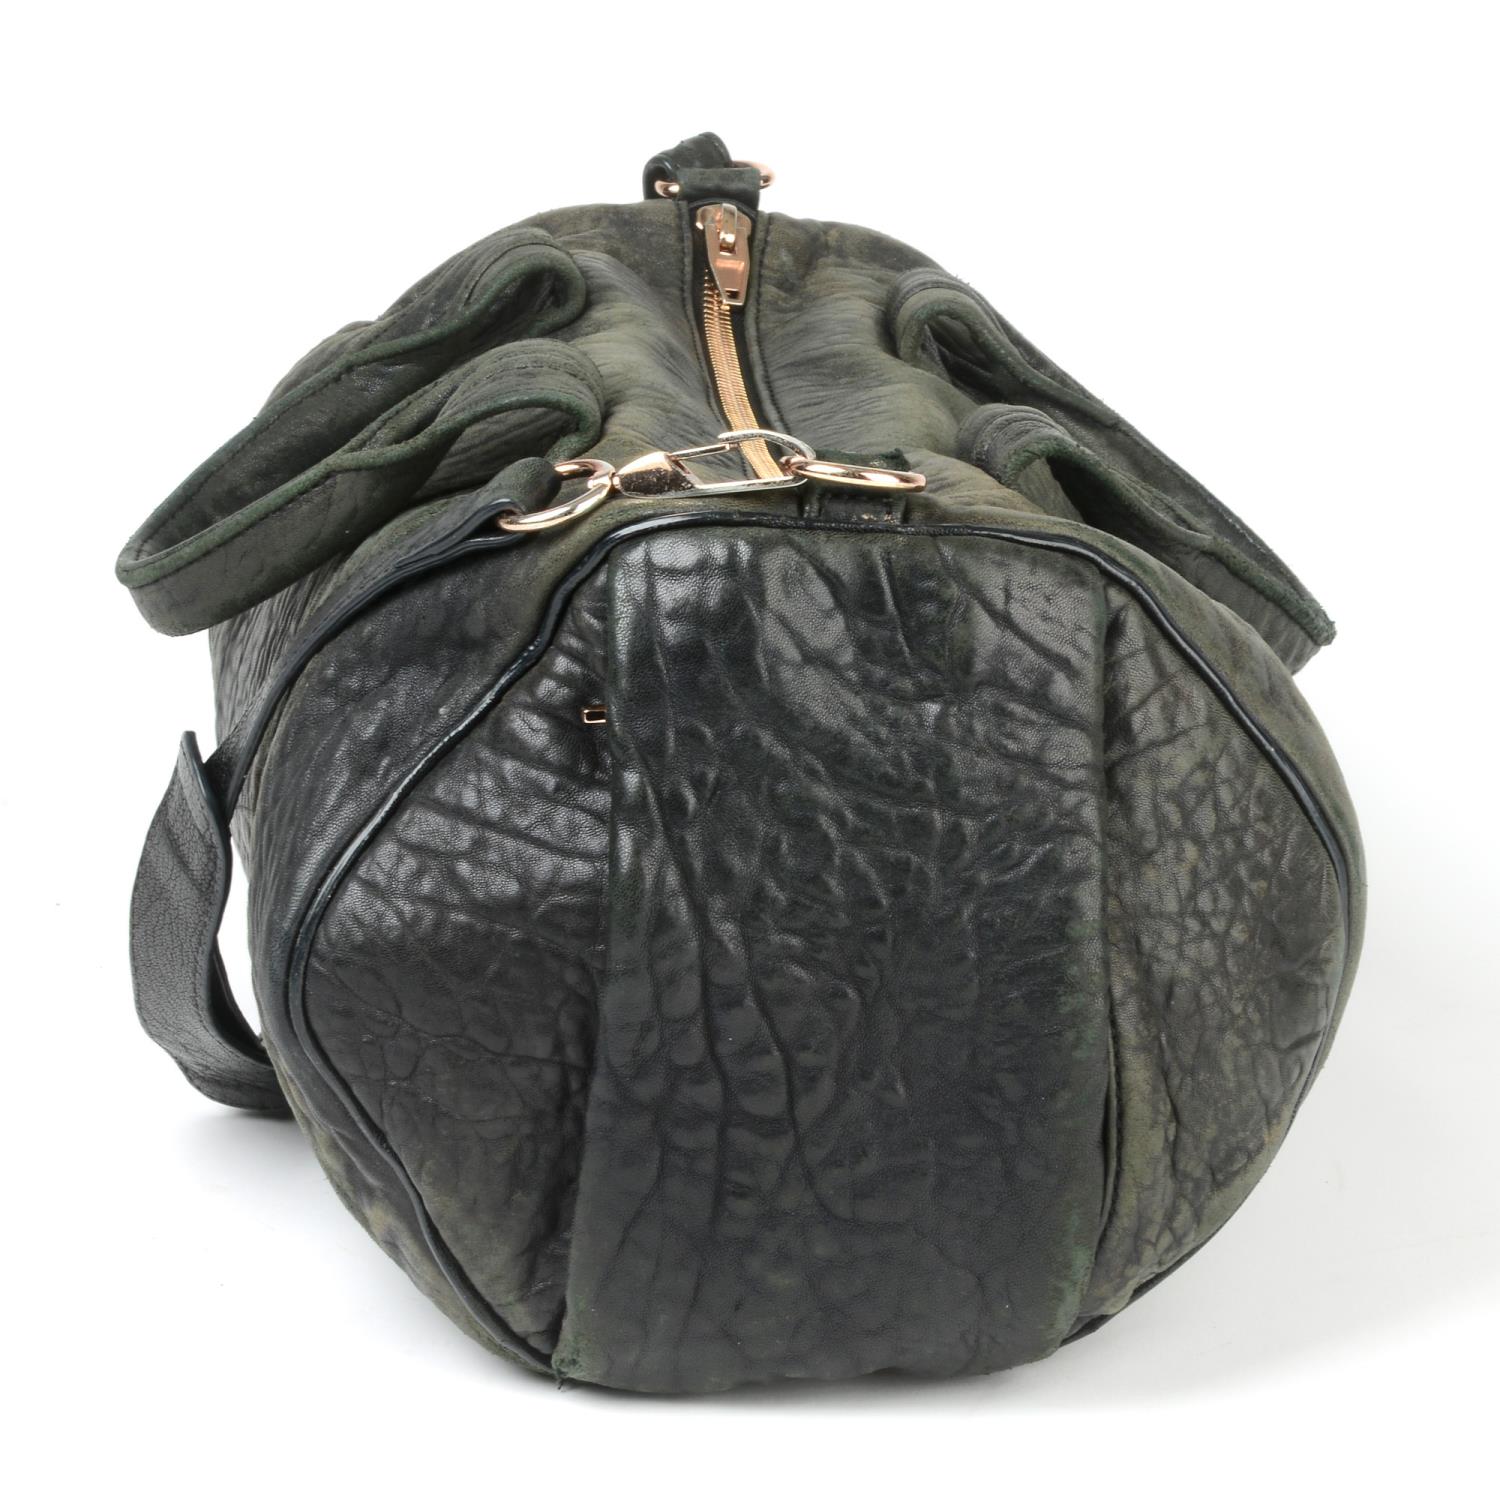 ALEXANDER WANG - a Rocco leather handbag. - Image 4 of 5